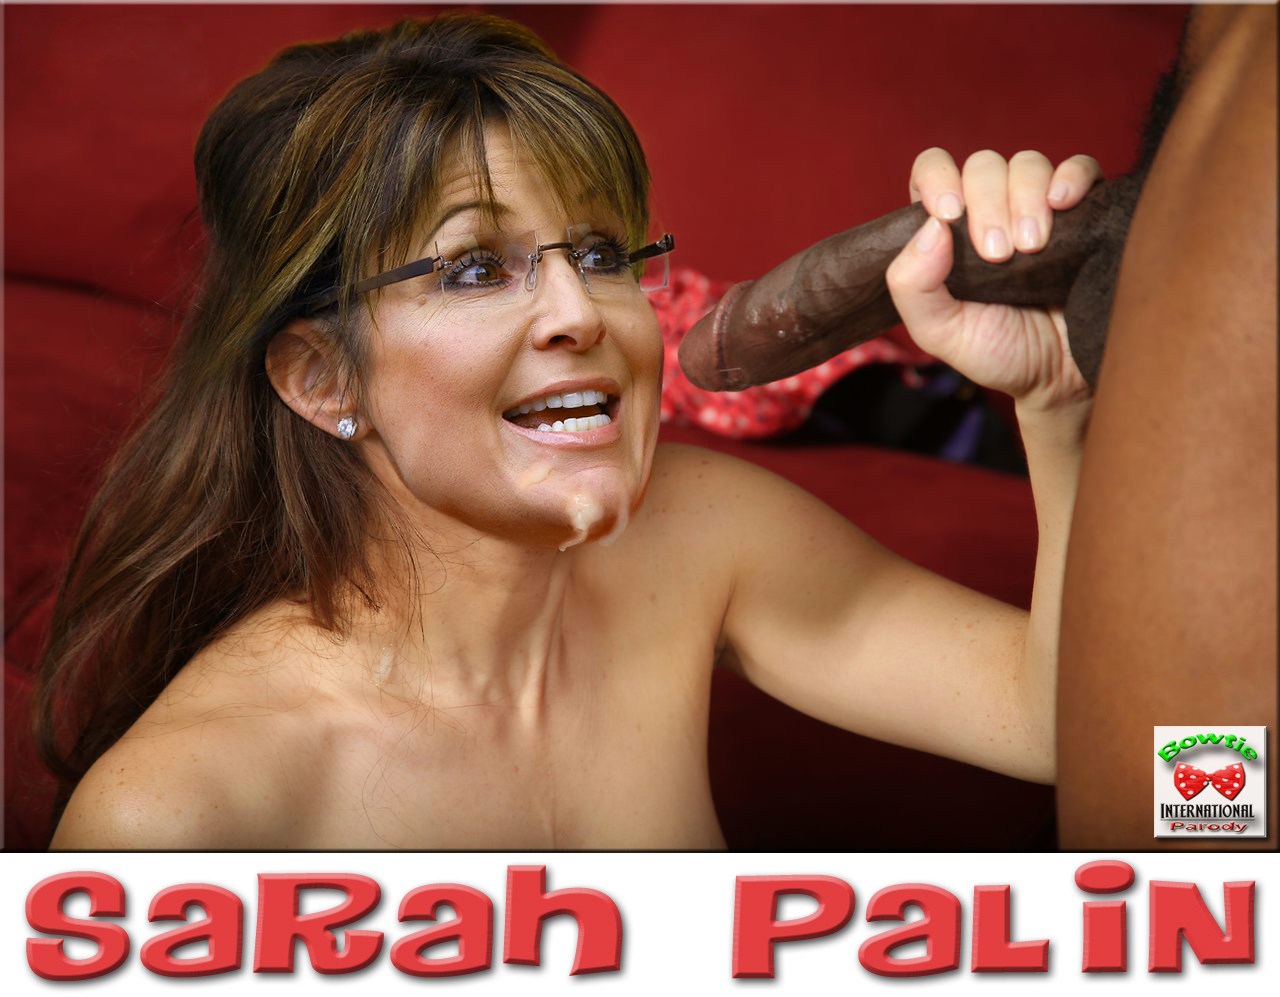 Sarah palin fake porn